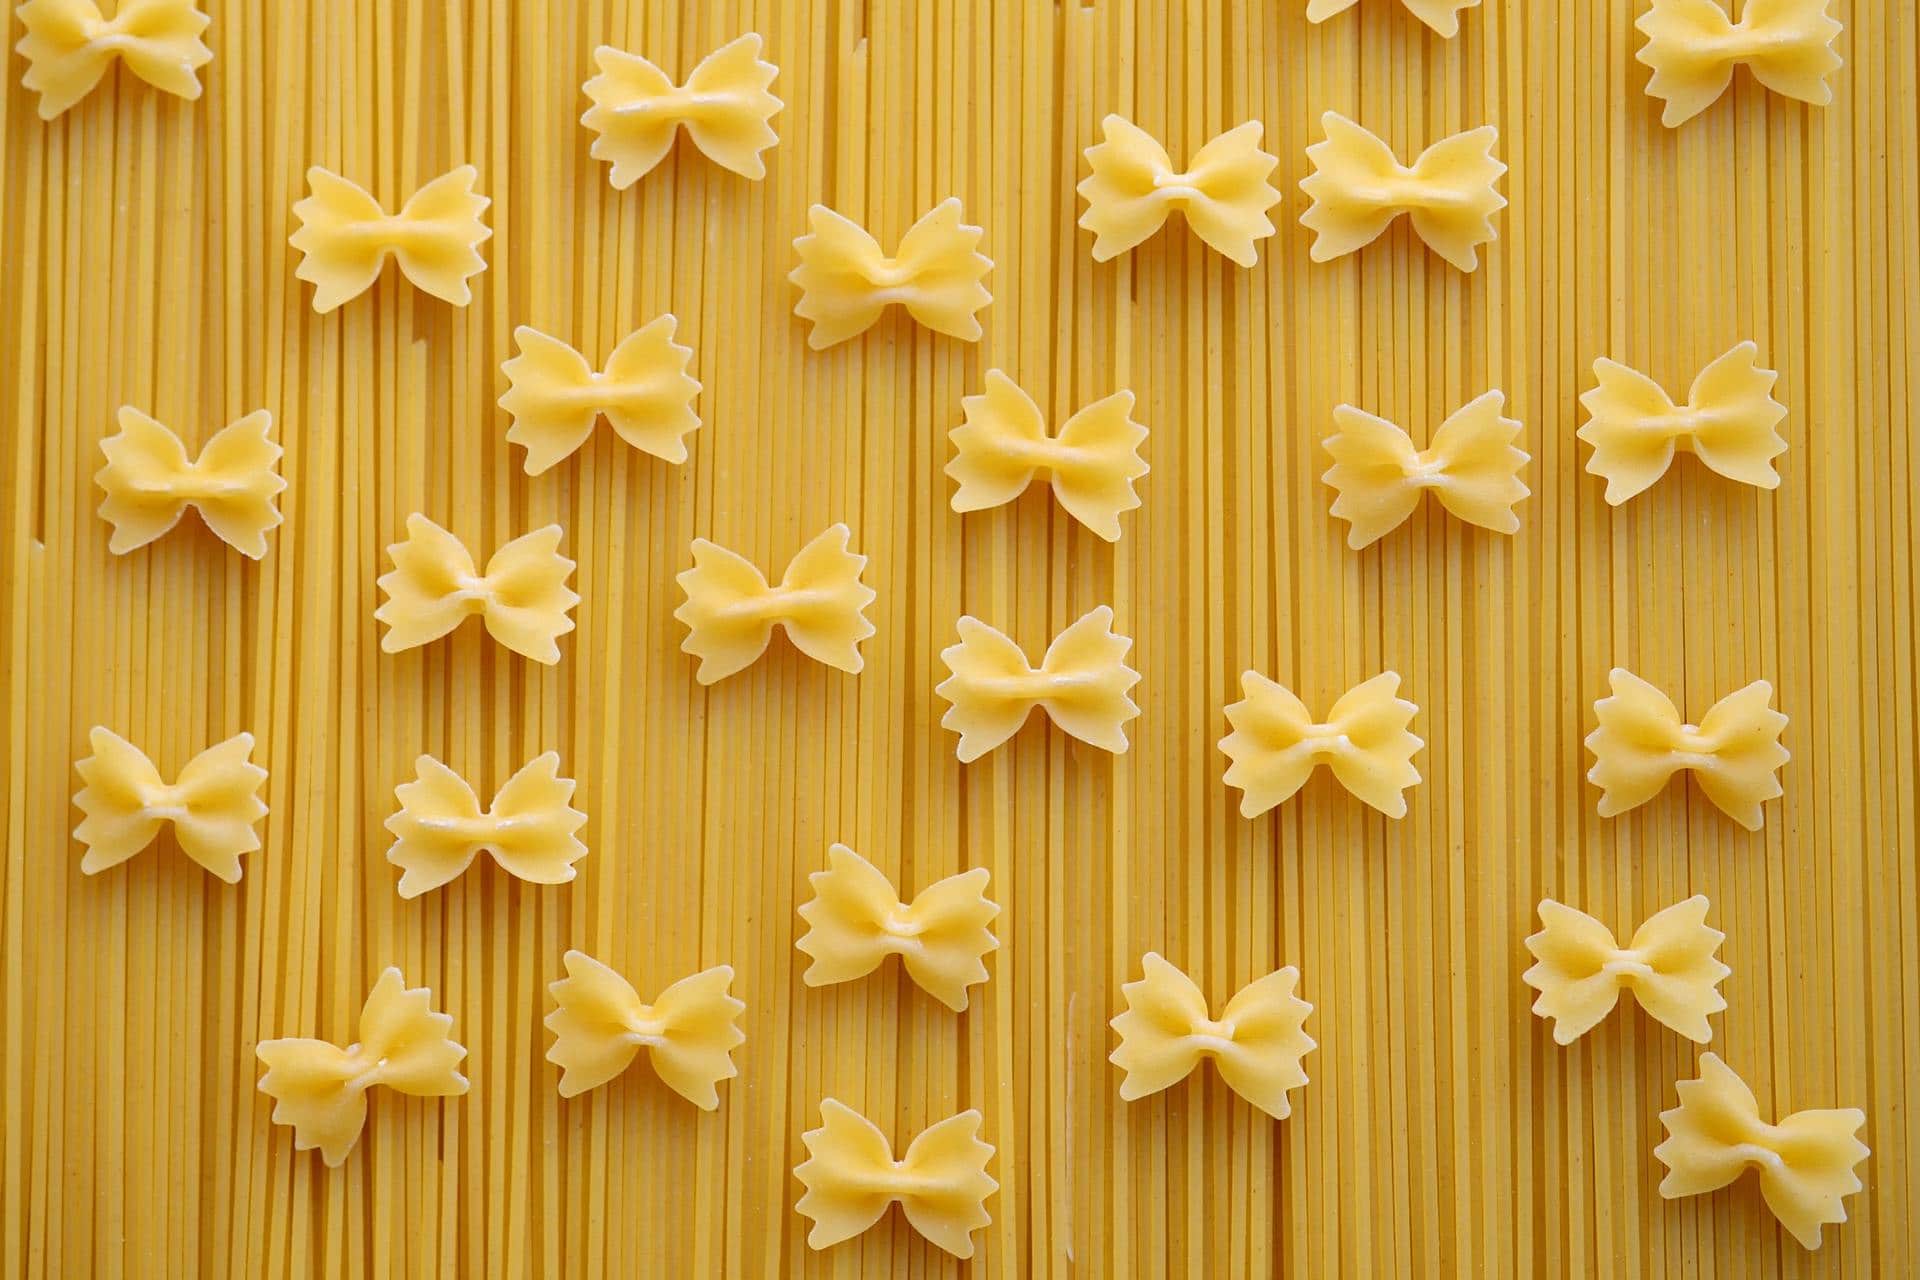 Spaghetti and bow-tie pasta